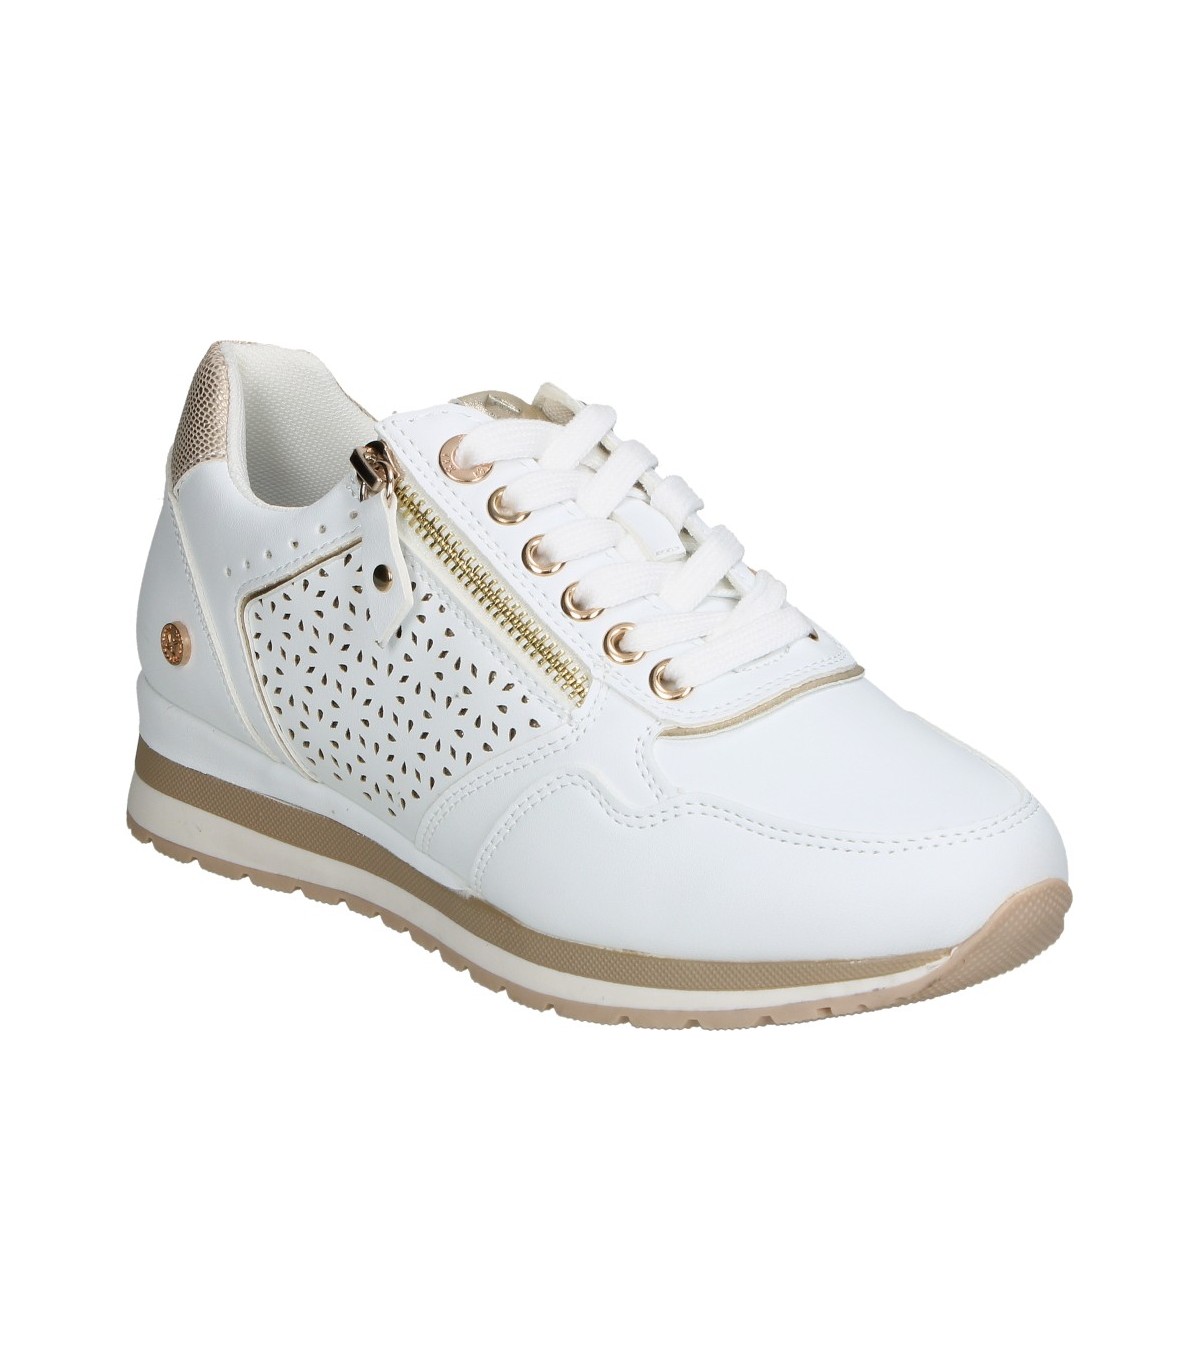 Xti Zapatillas deportivas de mujer color blanco con cuña por 21,95€.